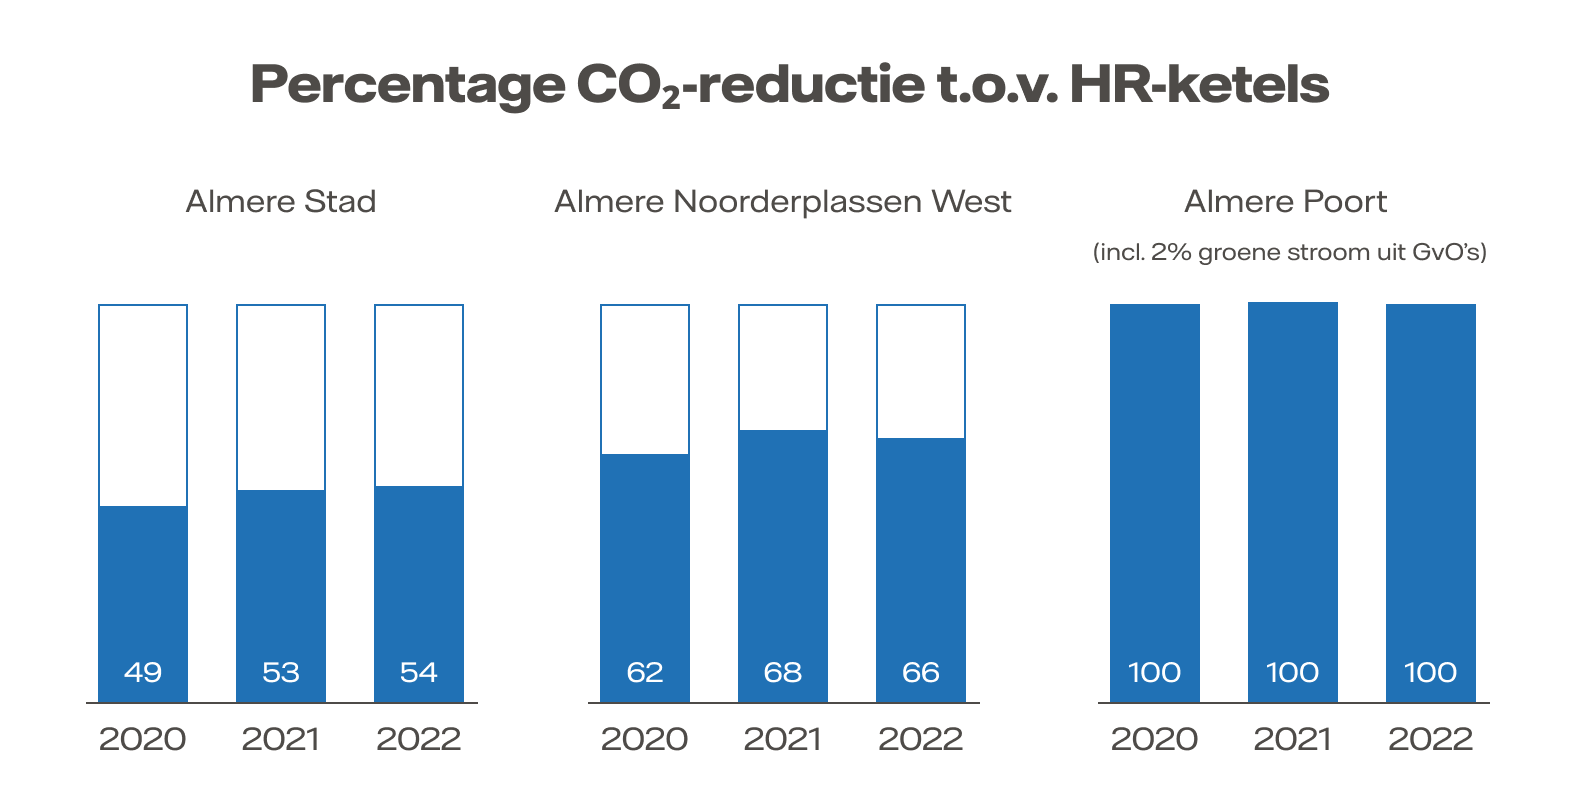 Staafdiagram met de CO2-reductie in Almere Stad, Noorderplassen West en Poort van 2020-2022